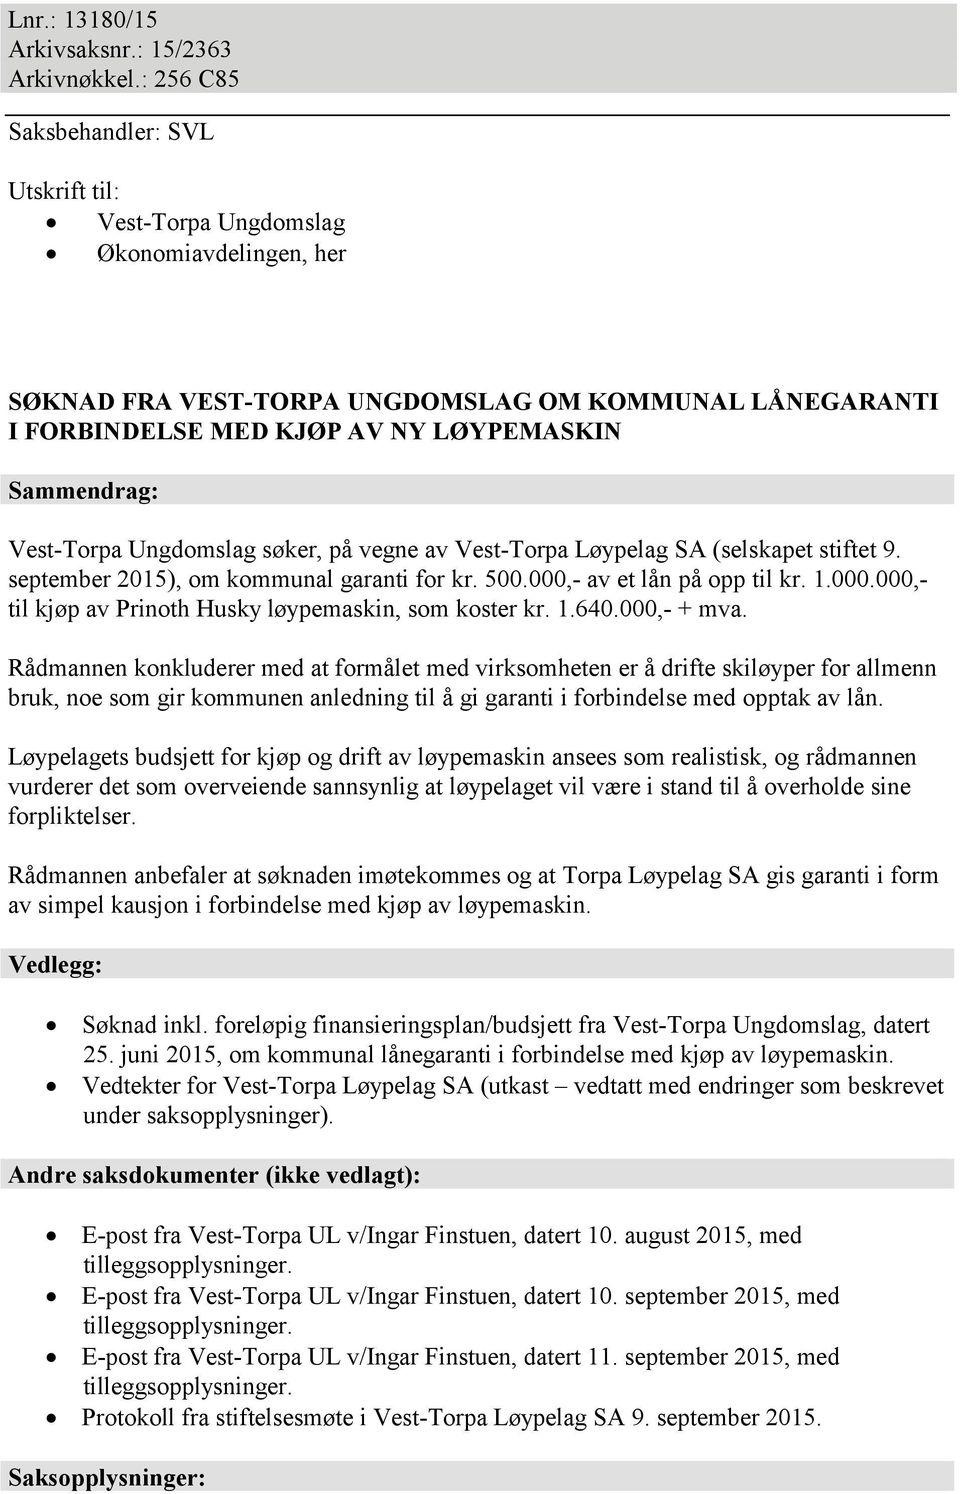 Vest-Torpa Ungdomslag søker, på vegne av Vest-Torpa Løypelag SA (selskapet stiftet 9. september 2015), om kommunal garanti for kr. 500.000,- av et lån på opp til kr. 1.000.000,- til kjøp av Prinoth Husky løypemaskin, som koster kr.